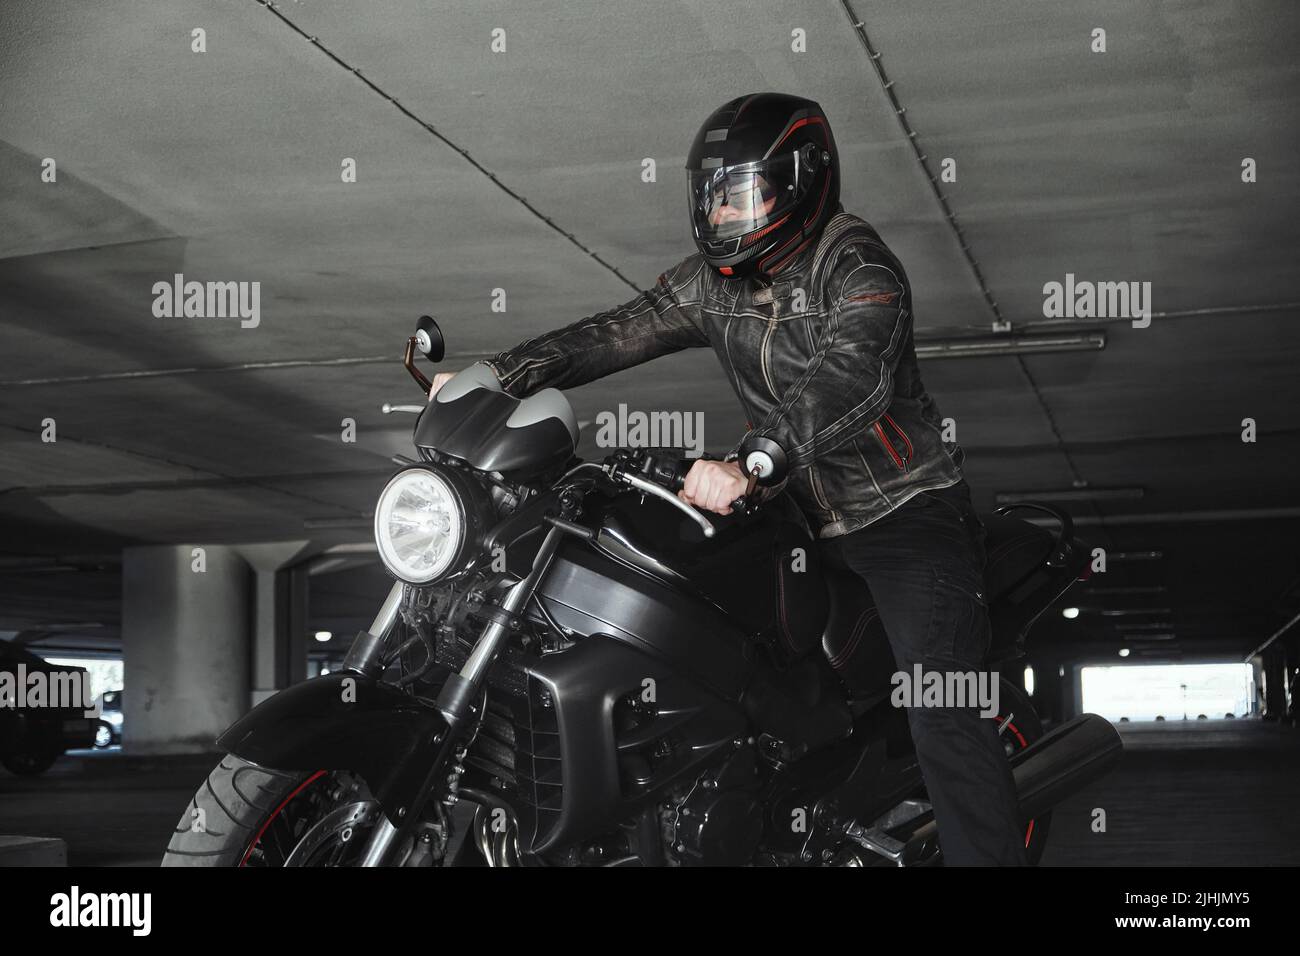 Un homme dans un casque assis sur une moto dans un garage souterrain Banque D'Images